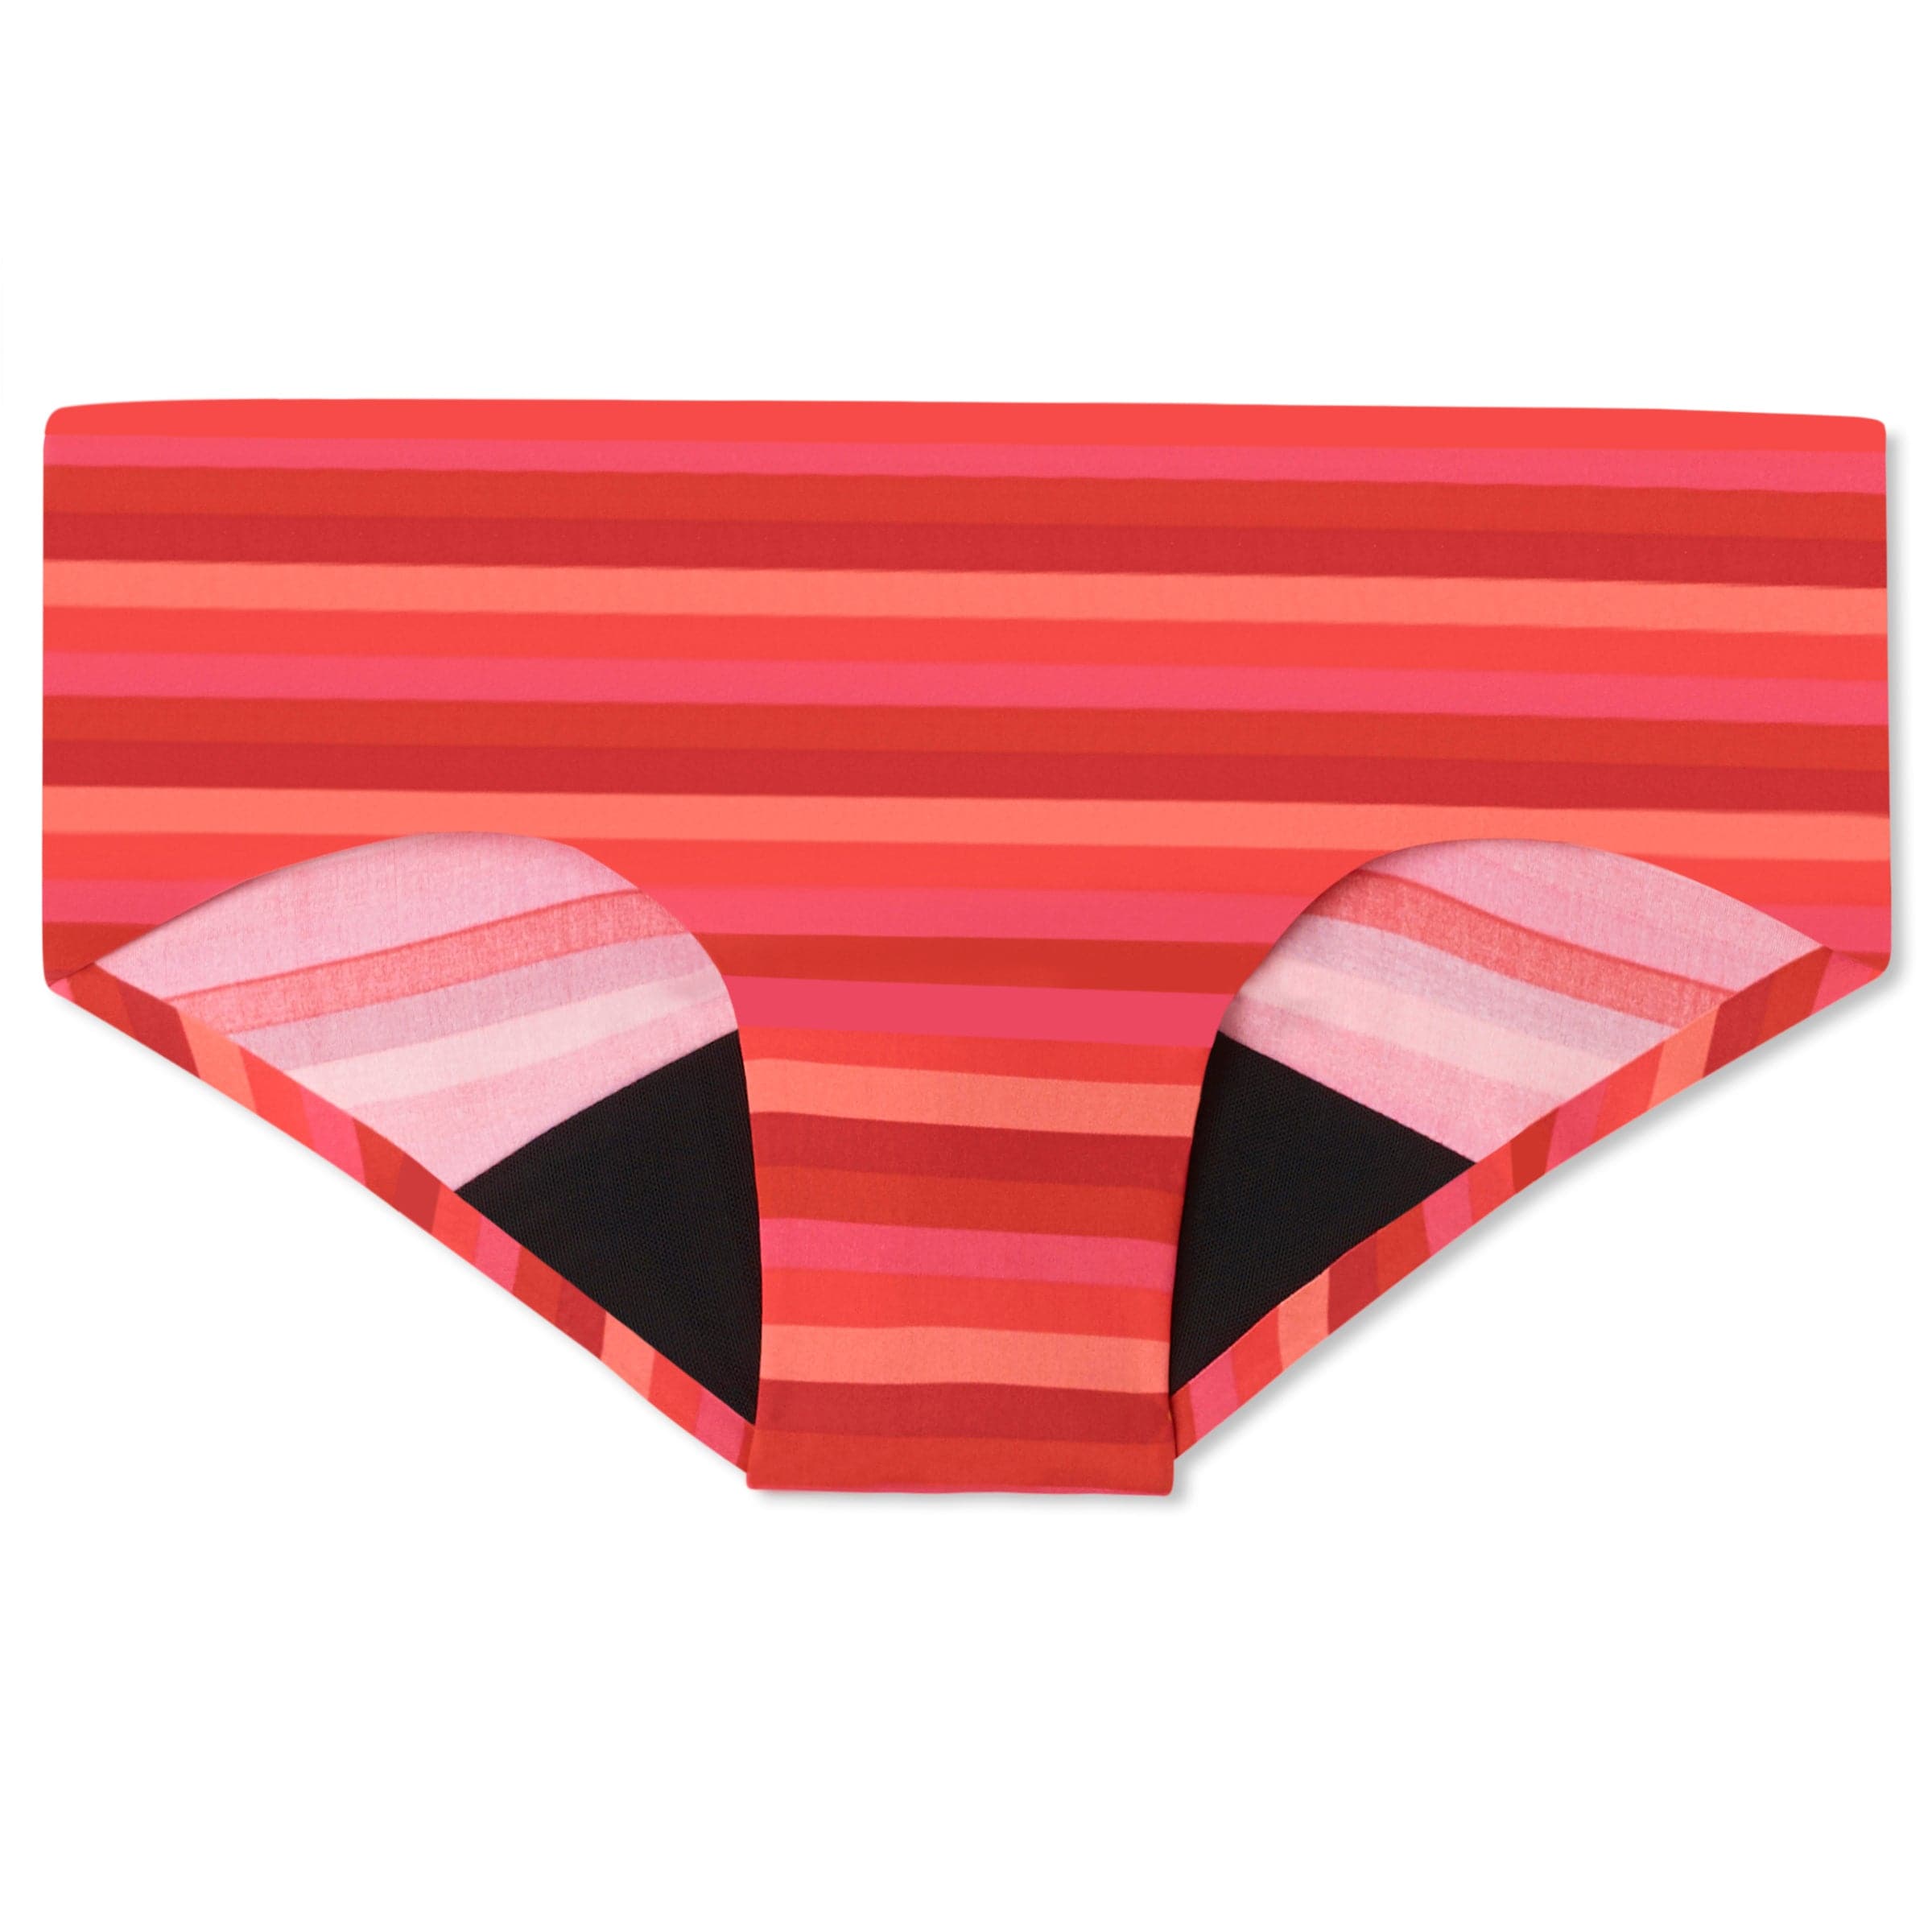 CODE RED Menstrual Underwear Period Underwear For Women Period Panties-Hot  Pink-L